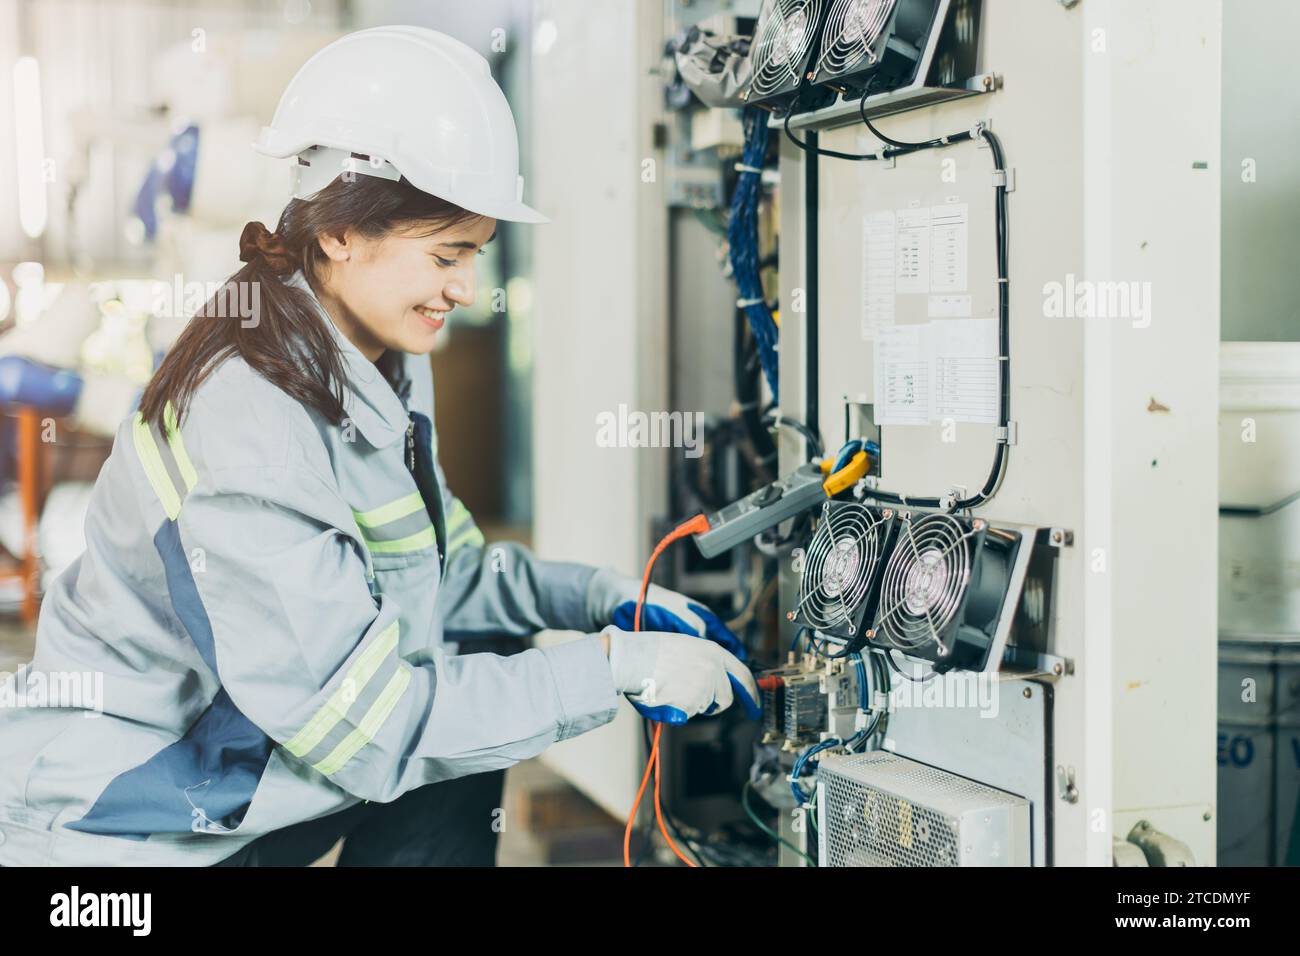 Elektriker Frauen Arbeiter Überprüfung Reparatur Wartung Wartung Wartung Wartung elektrische Anlage reparieren. Weibliche Elektroingenieurin, die Elektrokabel am Hauptstromnetz testet Stockfoto